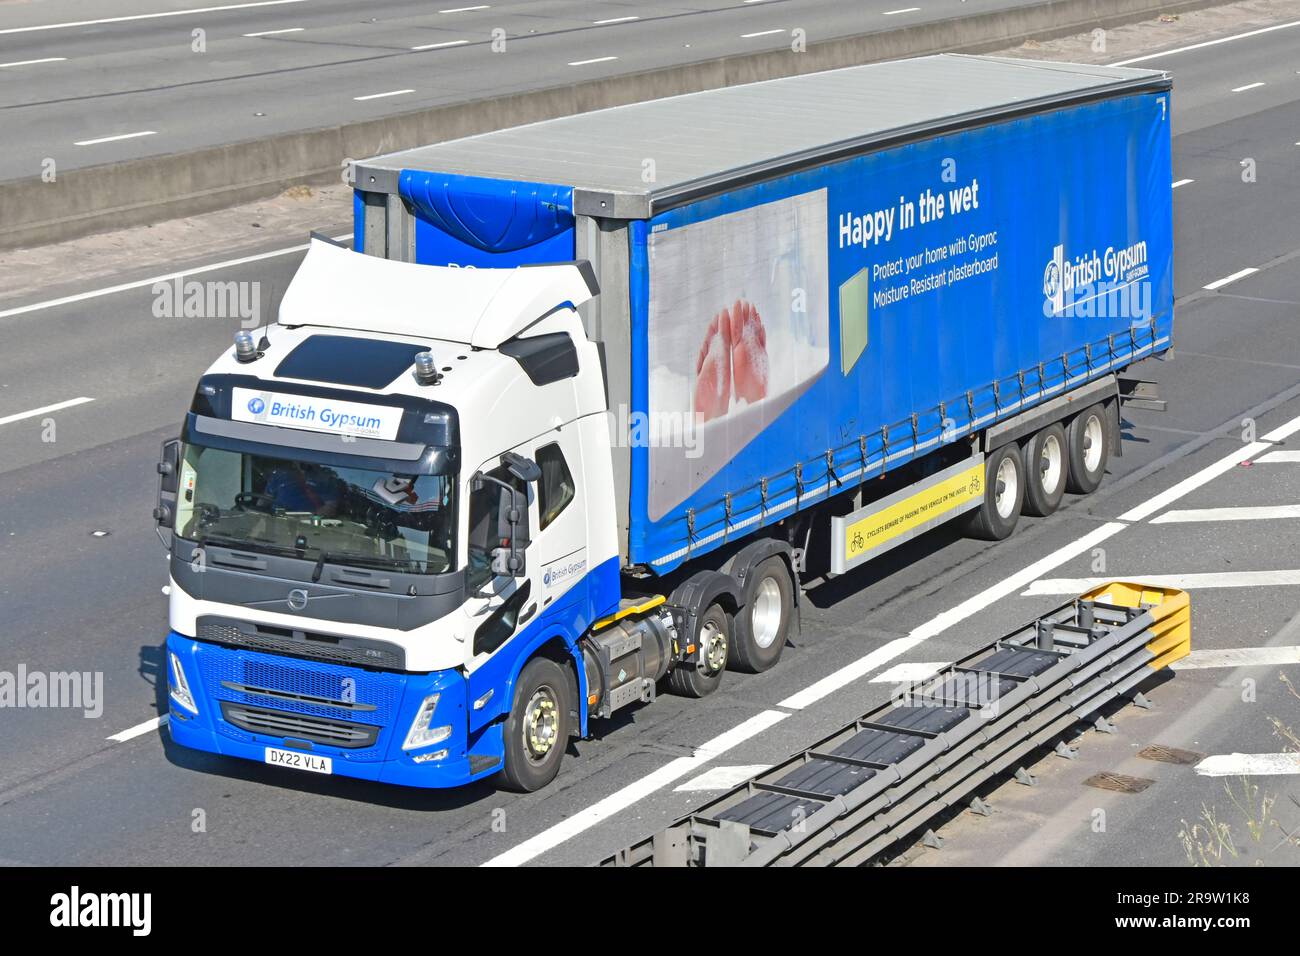 British Gypsum Saint-Gobain placoplâtre revêtement sec entreprise côté et vue de face chaîne d'approvisionnement Volvo camion camion & remorque marque de transport publicité Royaume-Uni Banque D'Images